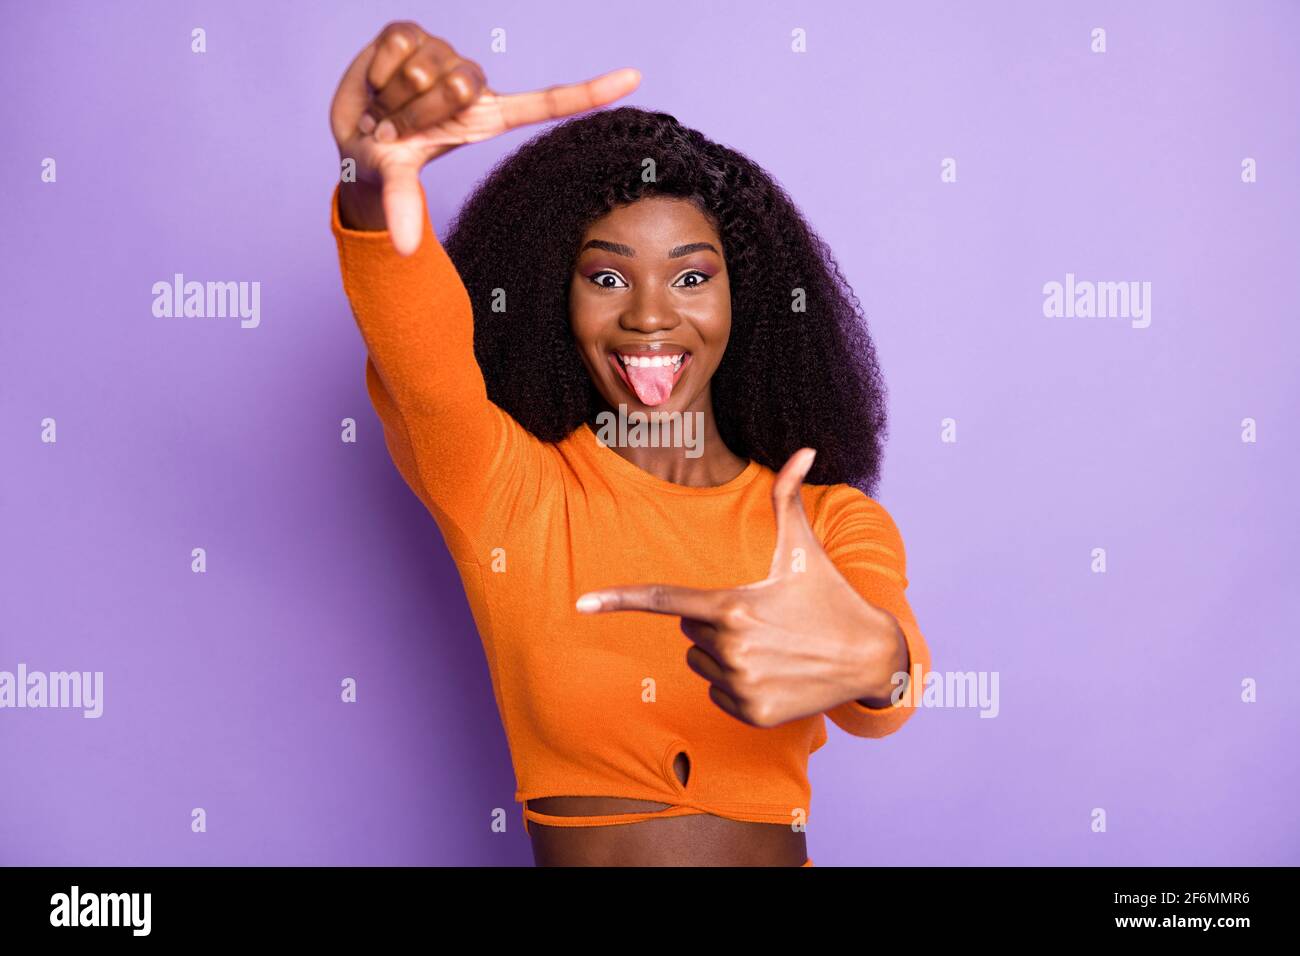 Ritratto di bella ragazza allegra e allegra con capelli ondulati che mostra grimacing cornice isolato su sfondo color viola pastello Foto Stock